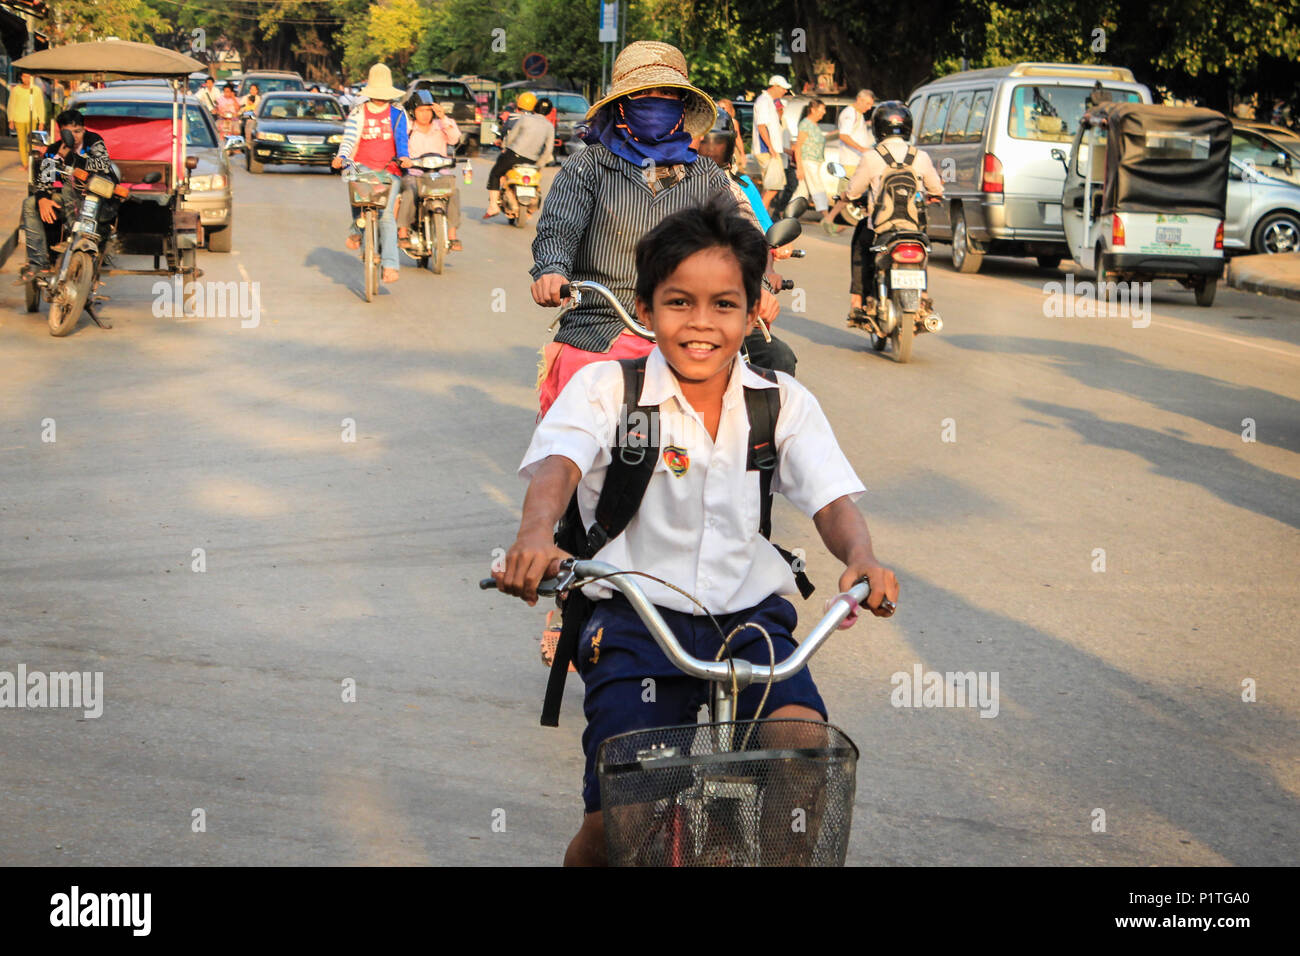 Siem Reap, Kambodscha - Januar 2014: Glücklich lächelnde School Zicklein auf dem Fahrrad im Straßenverkehr in Siem Reap, Kambodscha Stockfoto